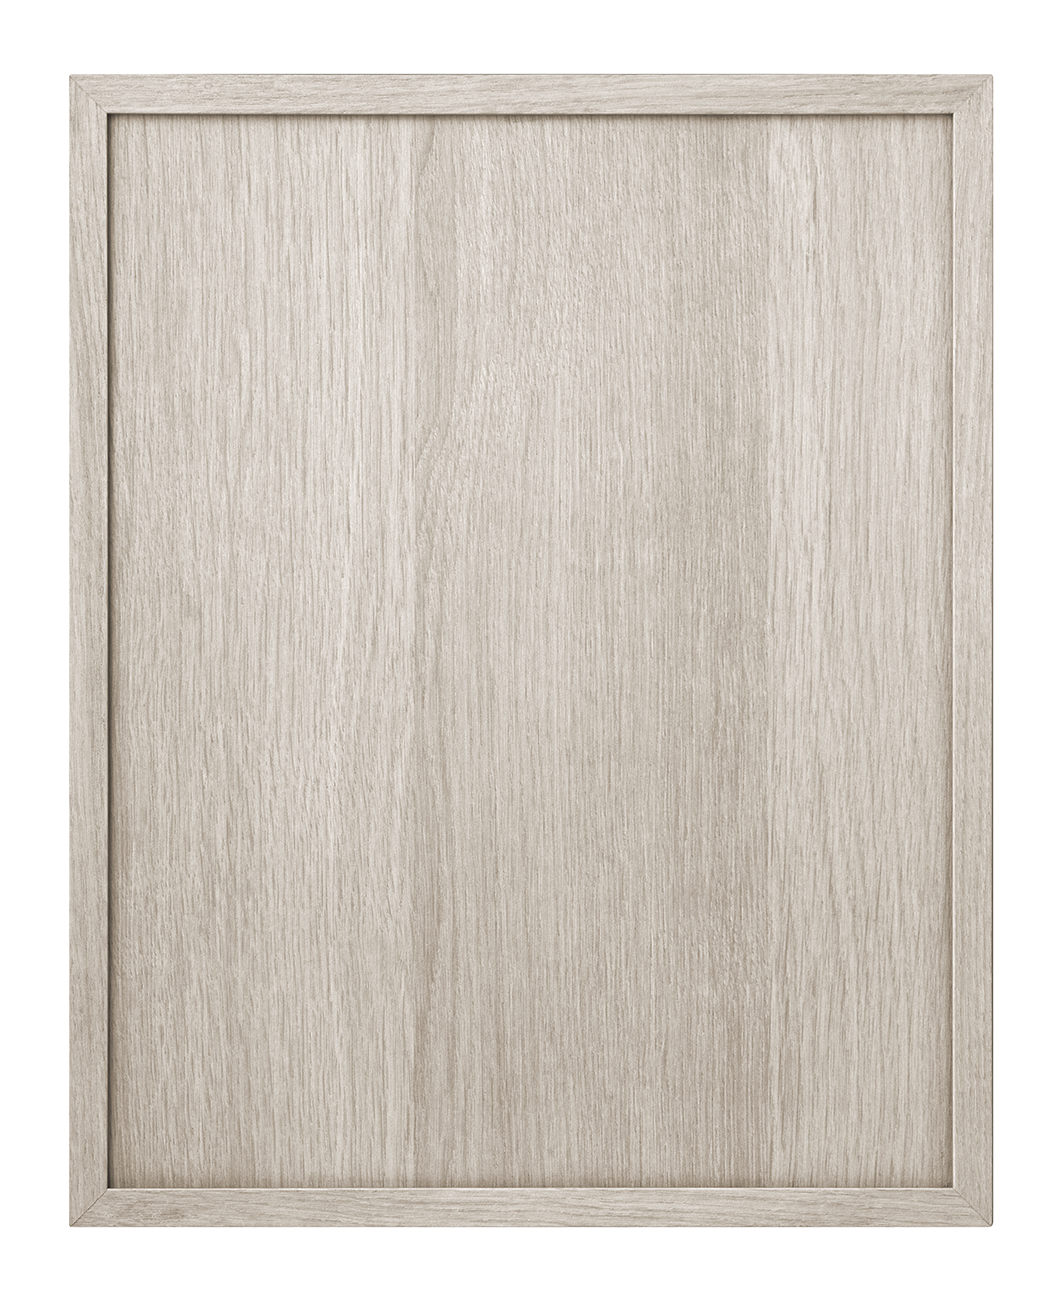 Kline shaker cabinet door in Tafisa K580 Free Spirit